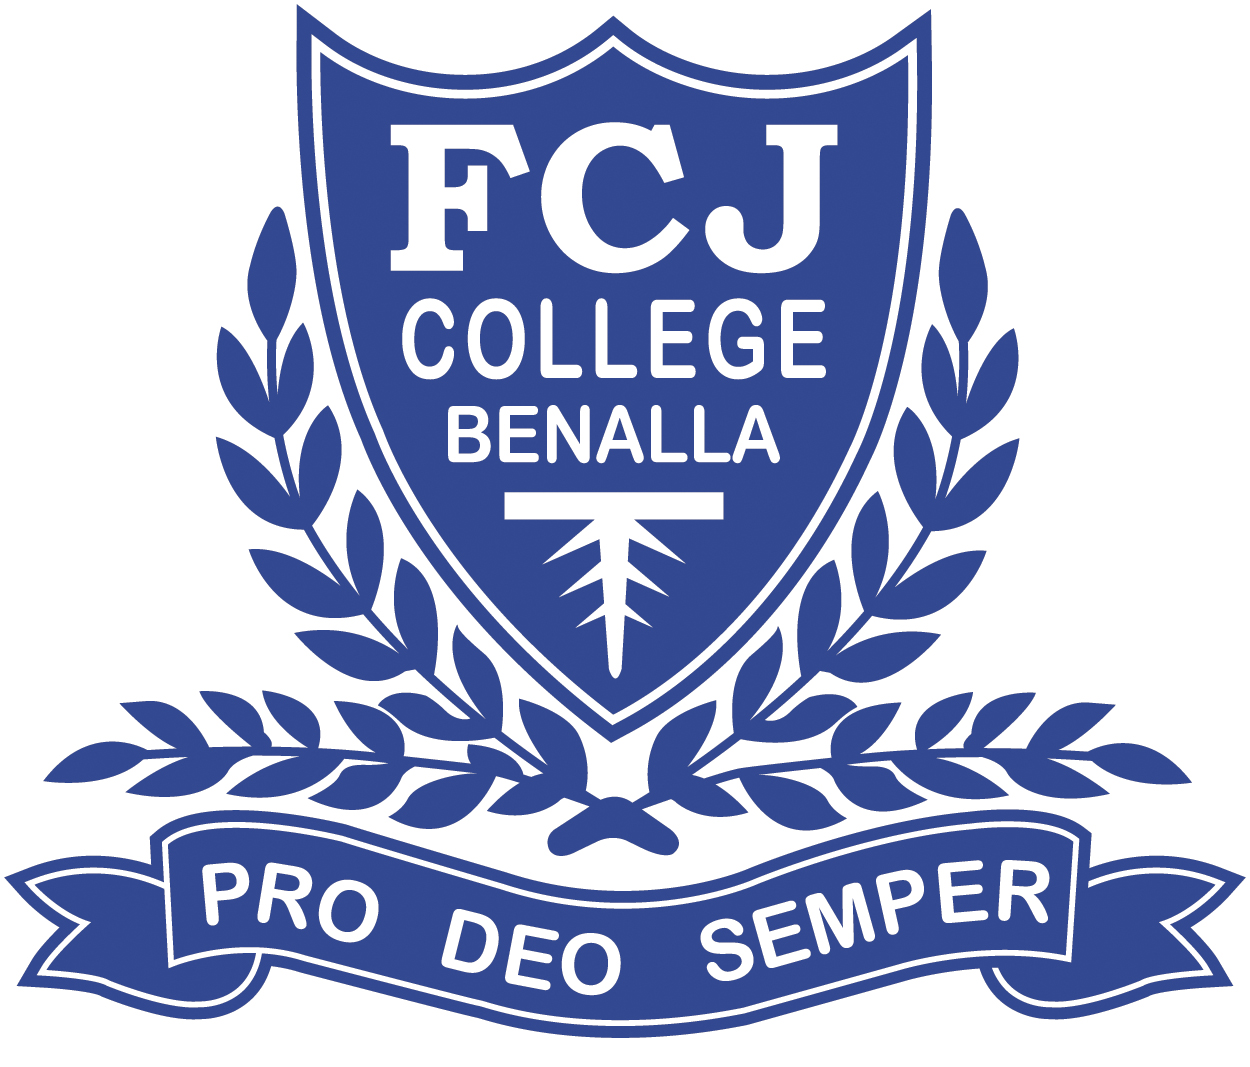 FCJ College Benalla